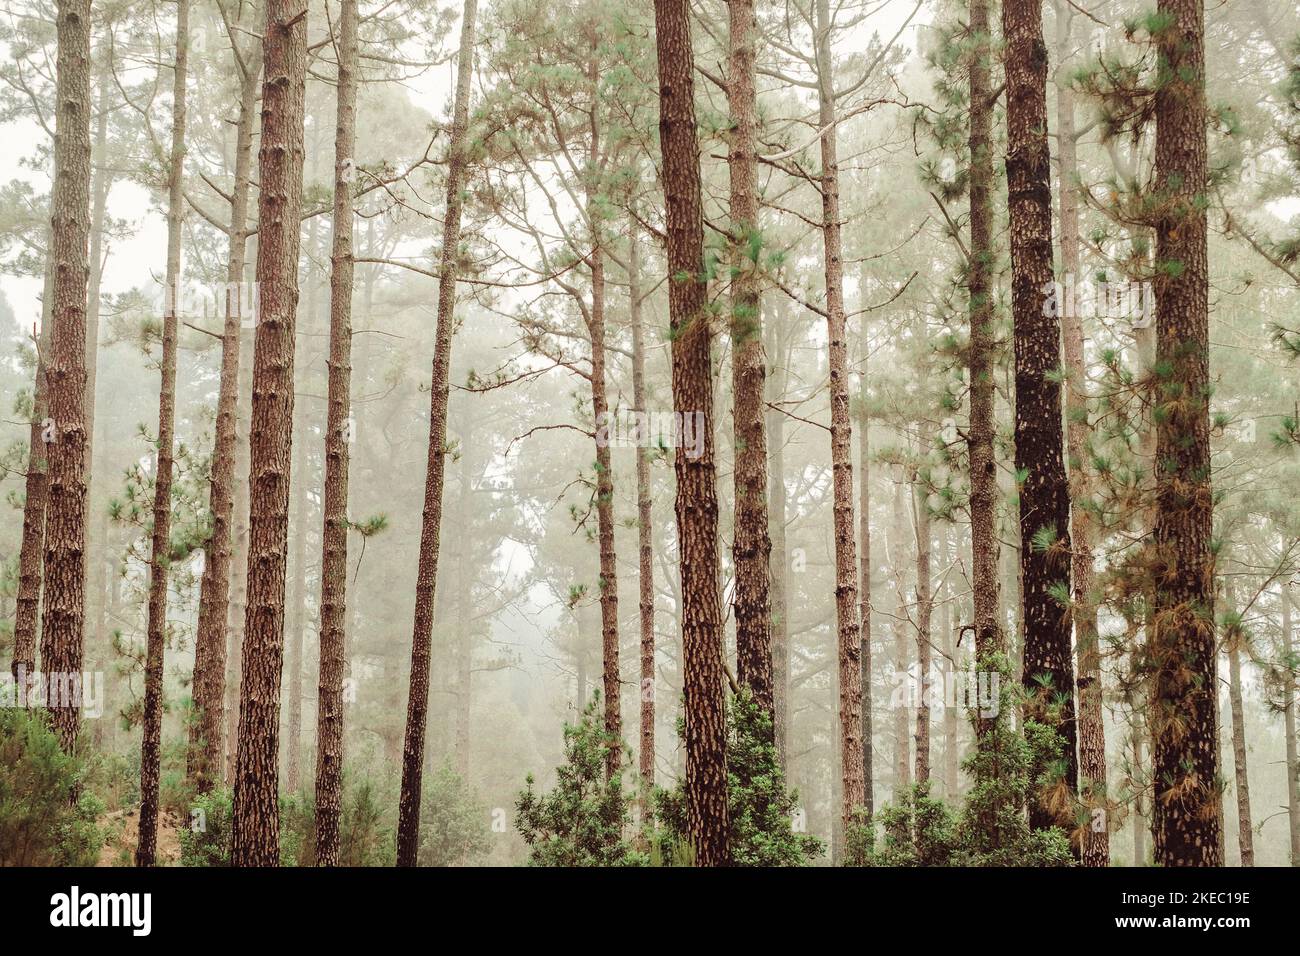 groupe de quelques arbres dans une forêt qui grandit ensemble - concept de la nature et aimer la nature Banque D'Images